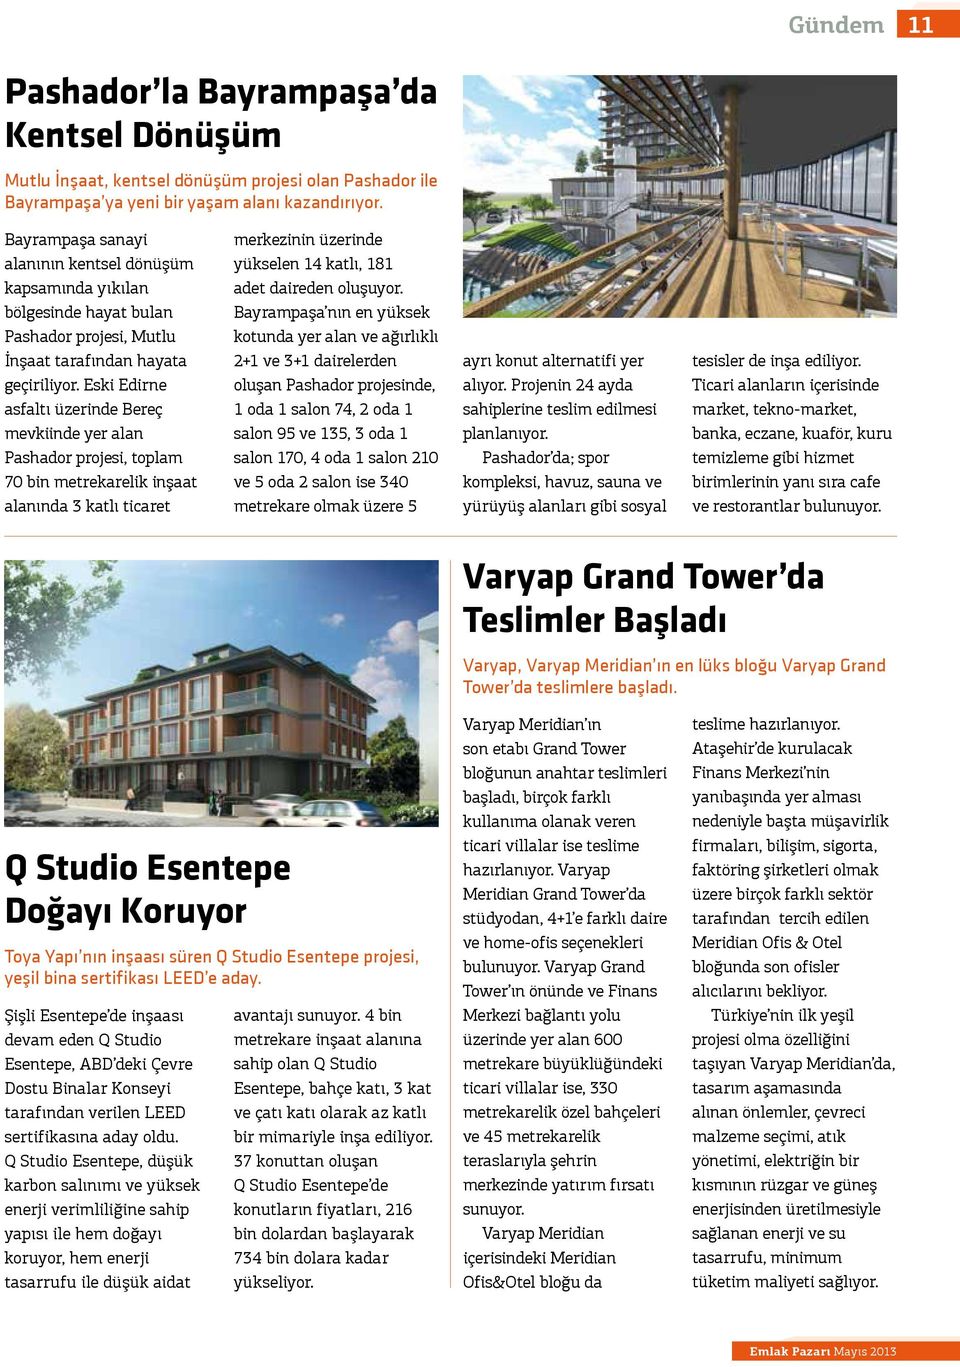 Eski Edirne asfaltı üzerinde Bereç mevkiinde yer alan Pashador projesi, toplam 70 bin metrekarelik inşaat alanında 3 katlı ticaret merkezinin üzerinde yükselen 14 katlı, 181 adet daireden oluşuyor.